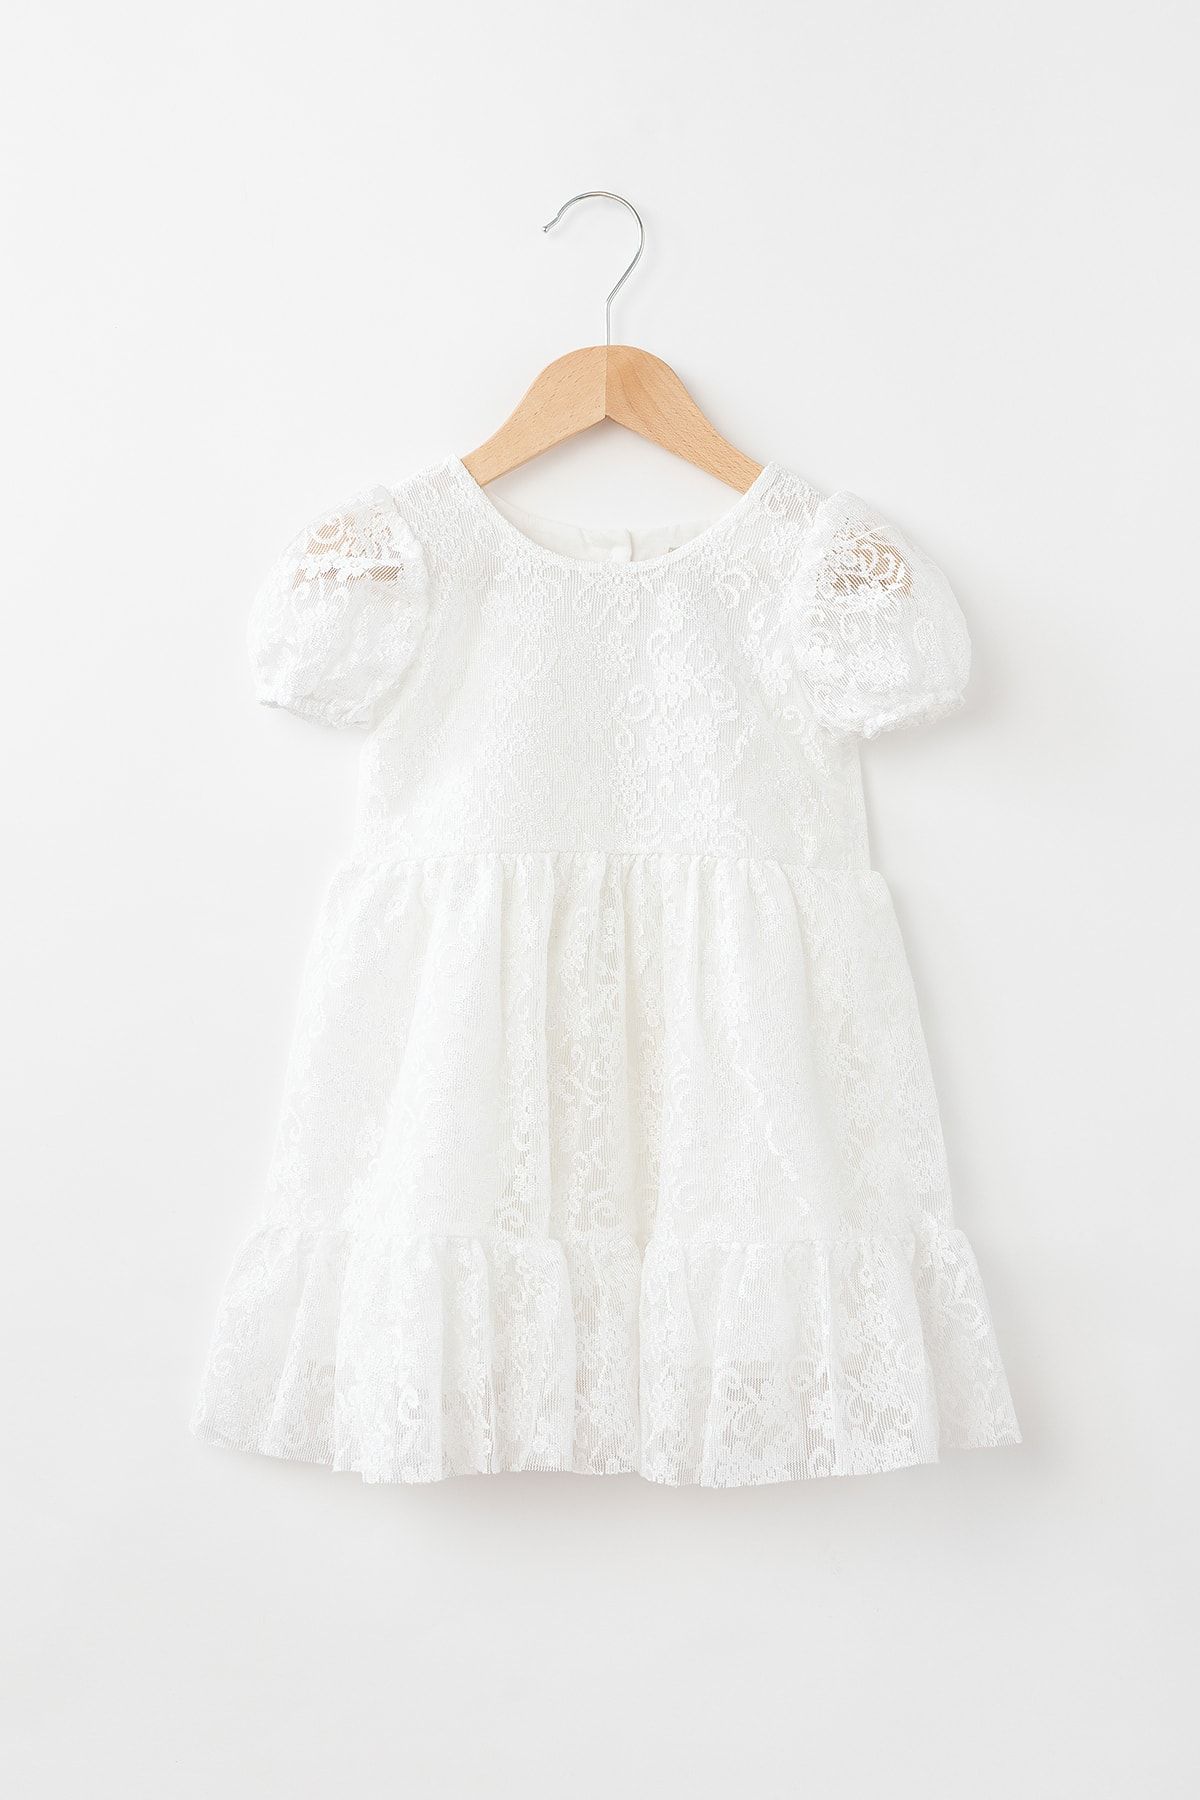 Banamio Kız Bebek Çocuk Pamuk Astarlı Elbise